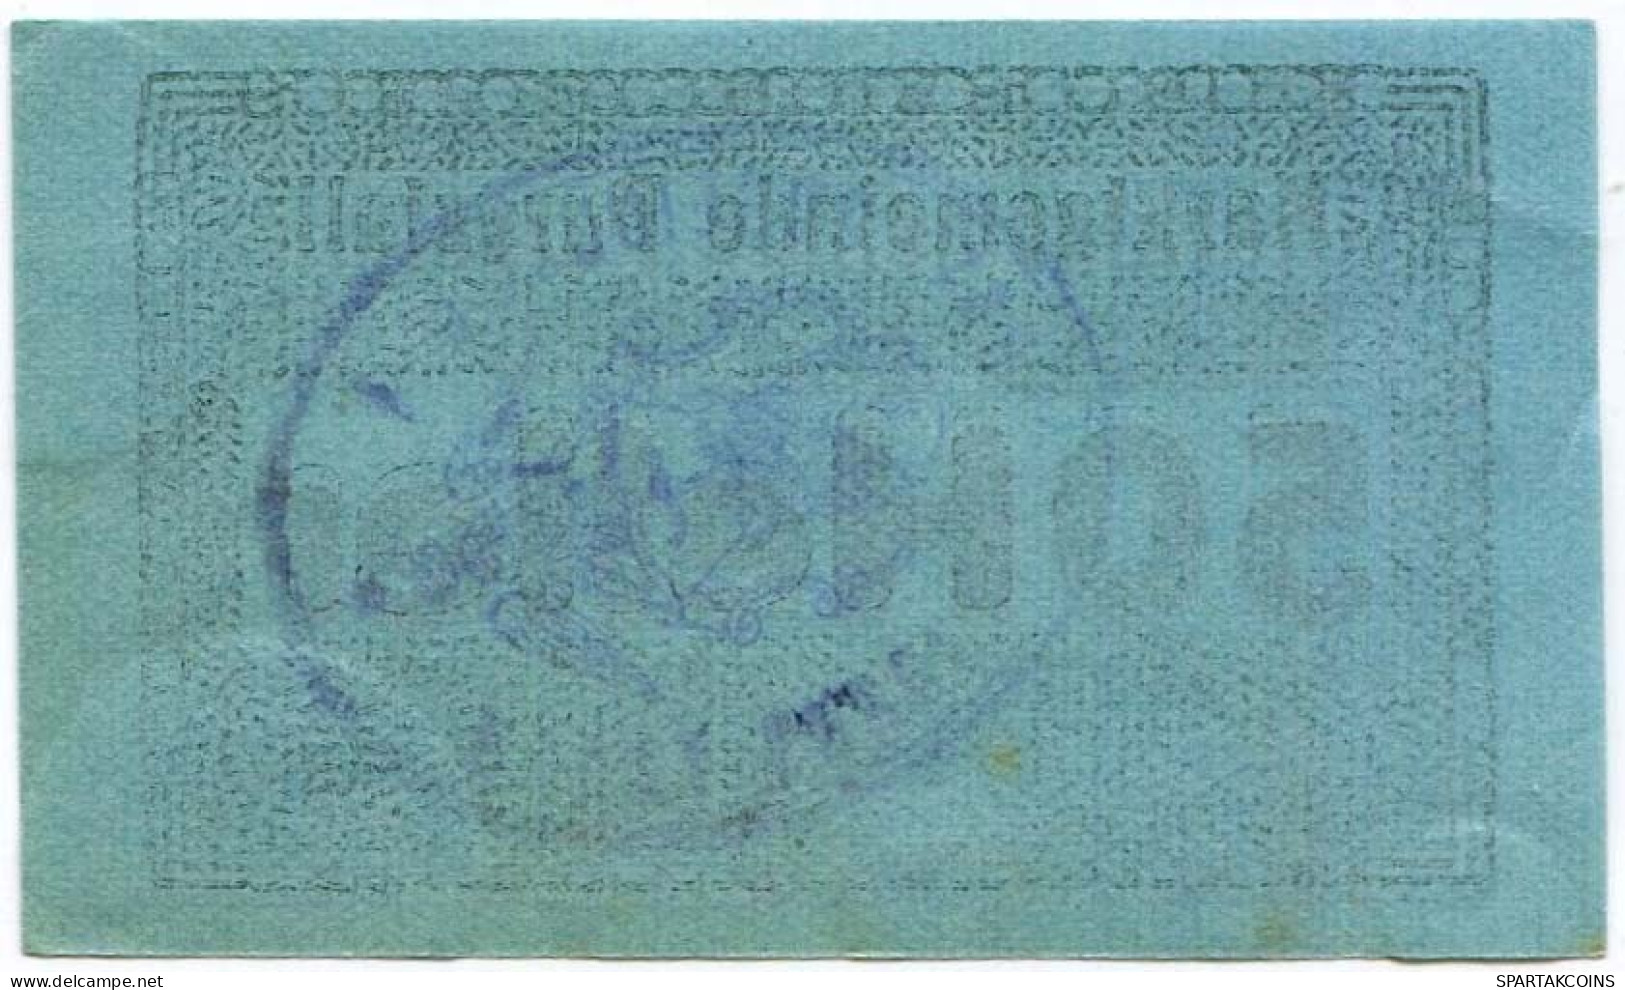 50 HELLER 1920 Stadt PURGSTALL AN DER ERLAUF Niedrigeren Österreich Notgeld Papiergeld Banknote #PL954 - [11] Local Banknote Issues